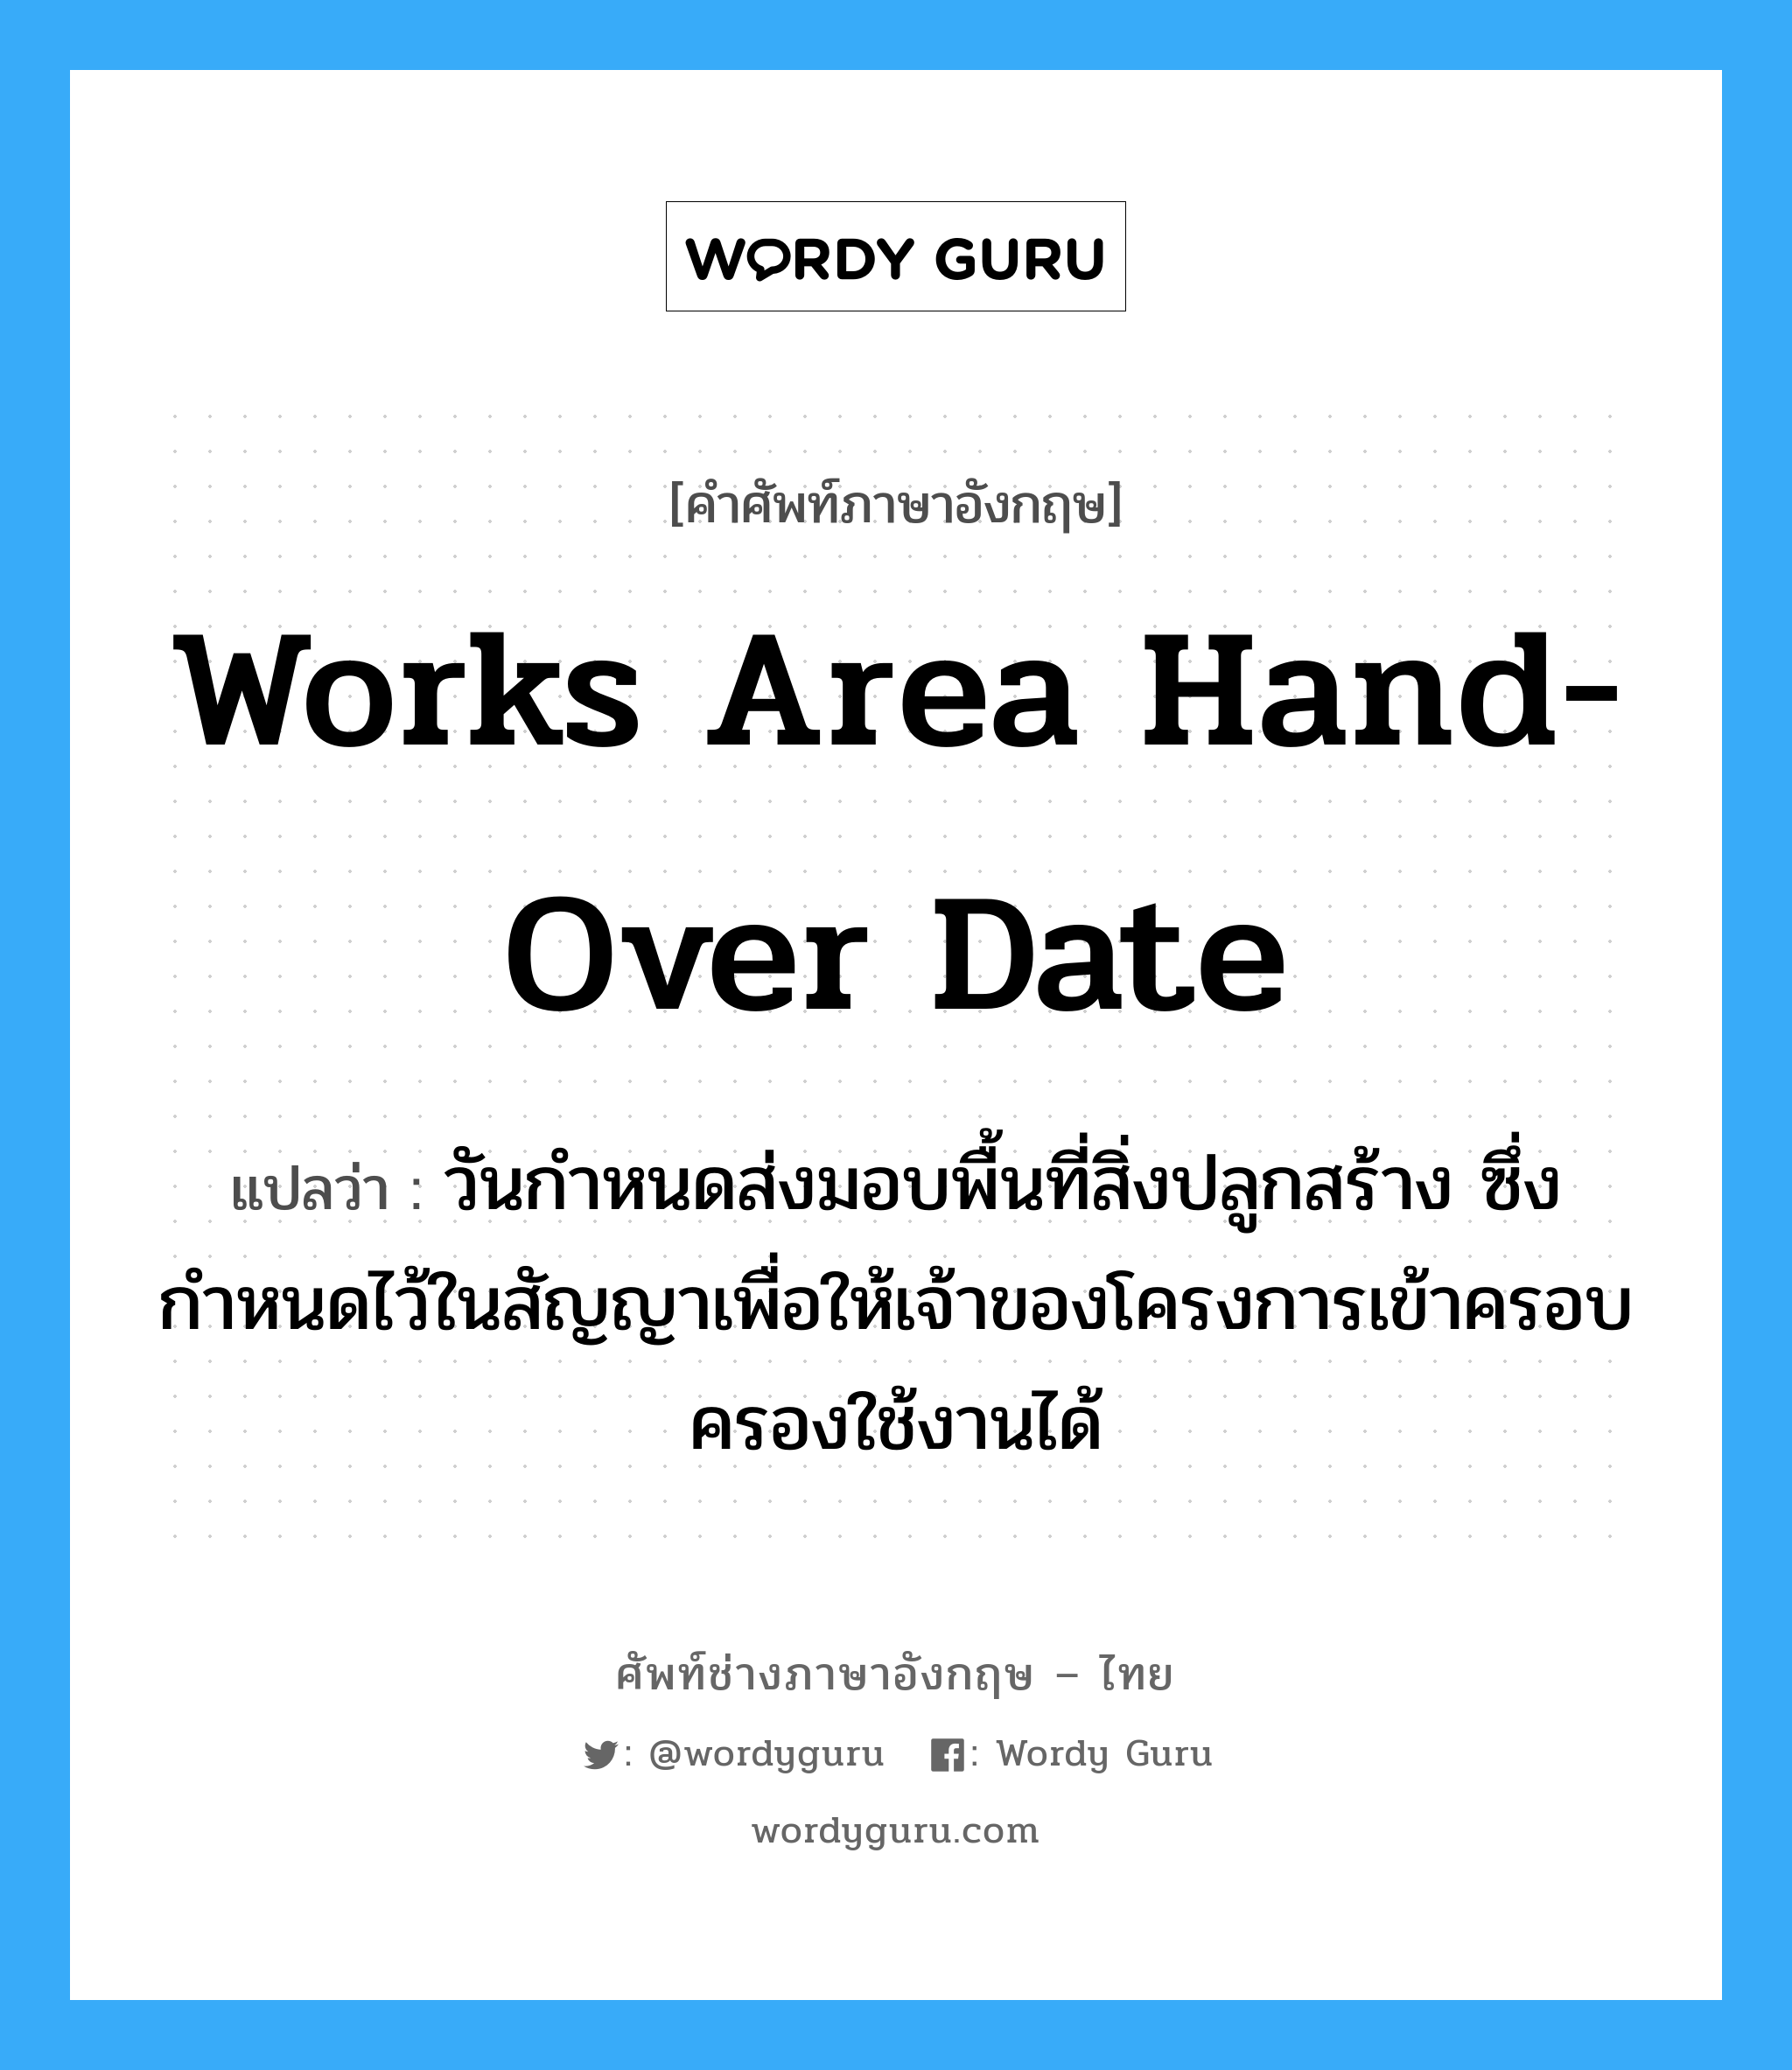 Works Area Hand-Over Date แปลว่า?, คำศัพท์ช่างภาษาอังกฤษ - ไทย Works Area Hand-Over Date คำศัพท์ภาษาอังกฤษ Works Area Hand-Over Date แปลว่า วันกำหนดส่งมอบพื้นที่สิ่งปลูกสร้าง ซึ่งกำหนดไว้ในสัญญาเพื่อให้เจ้าของโครงการเข้าครอบครองใช้งานได้